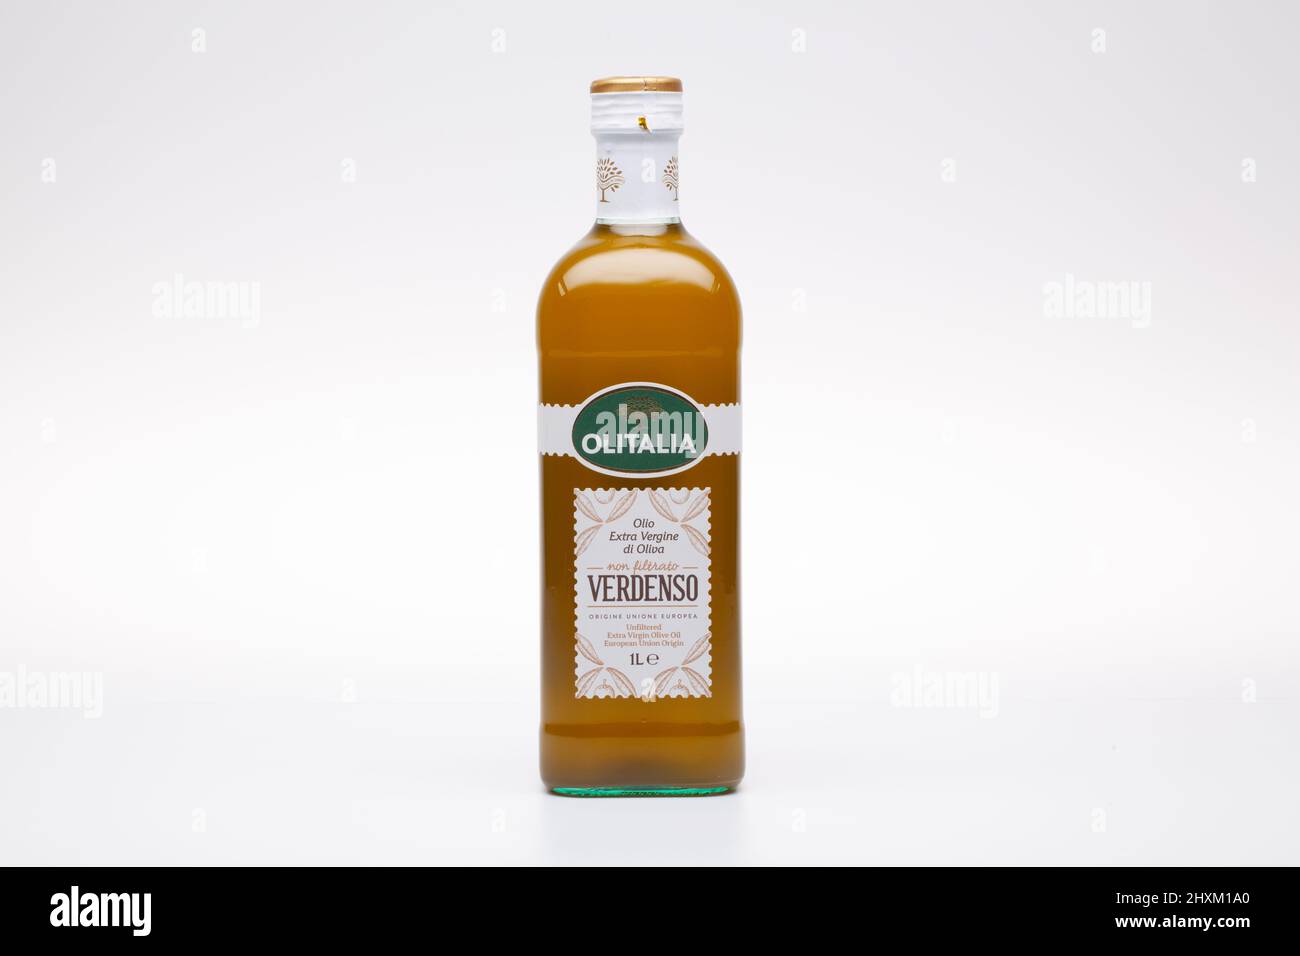 Prag, Tschechische Republik - 10. Dezember ,2020: Verdenso Olivenöl auf weißem Hintergrund. Olitalia, ein italienisches Unternehmen, das sich auf Öle und Essige spezialisiert hat. Stockfoto